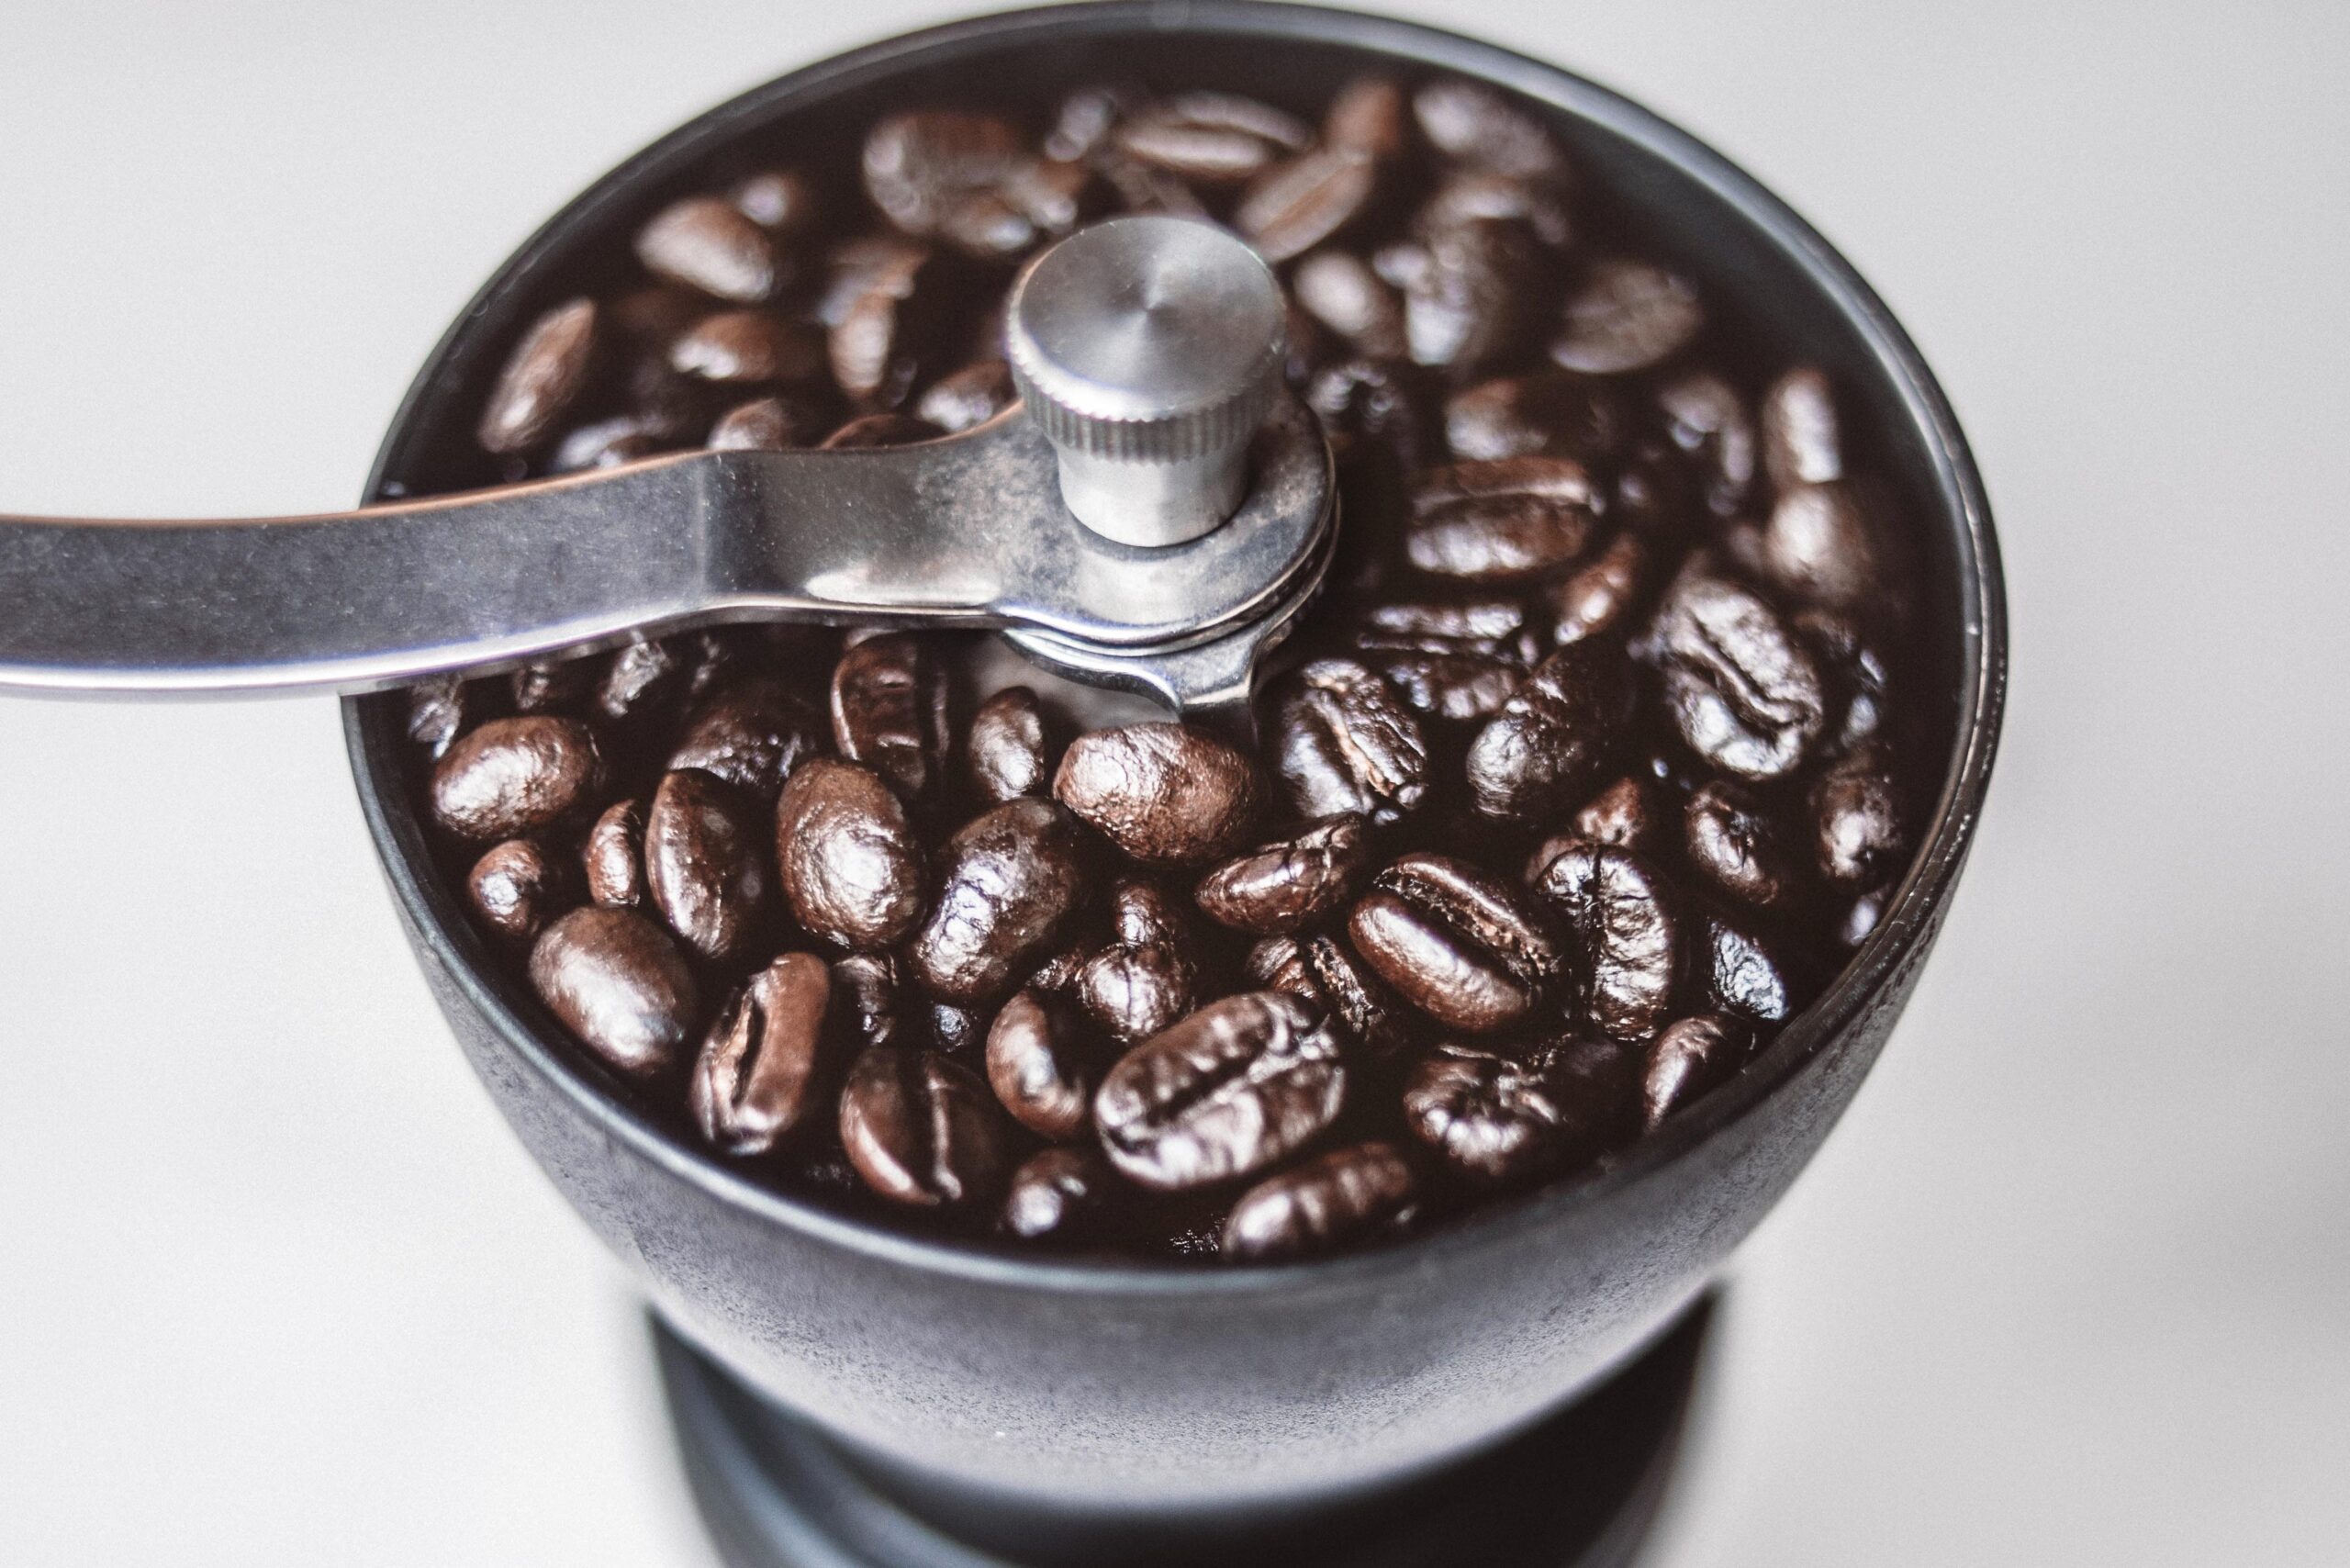 wyświetlaj po wyszukiwaniu słów: "młynek do kawy jaki wybrac", "jaki mlynek do kawy"